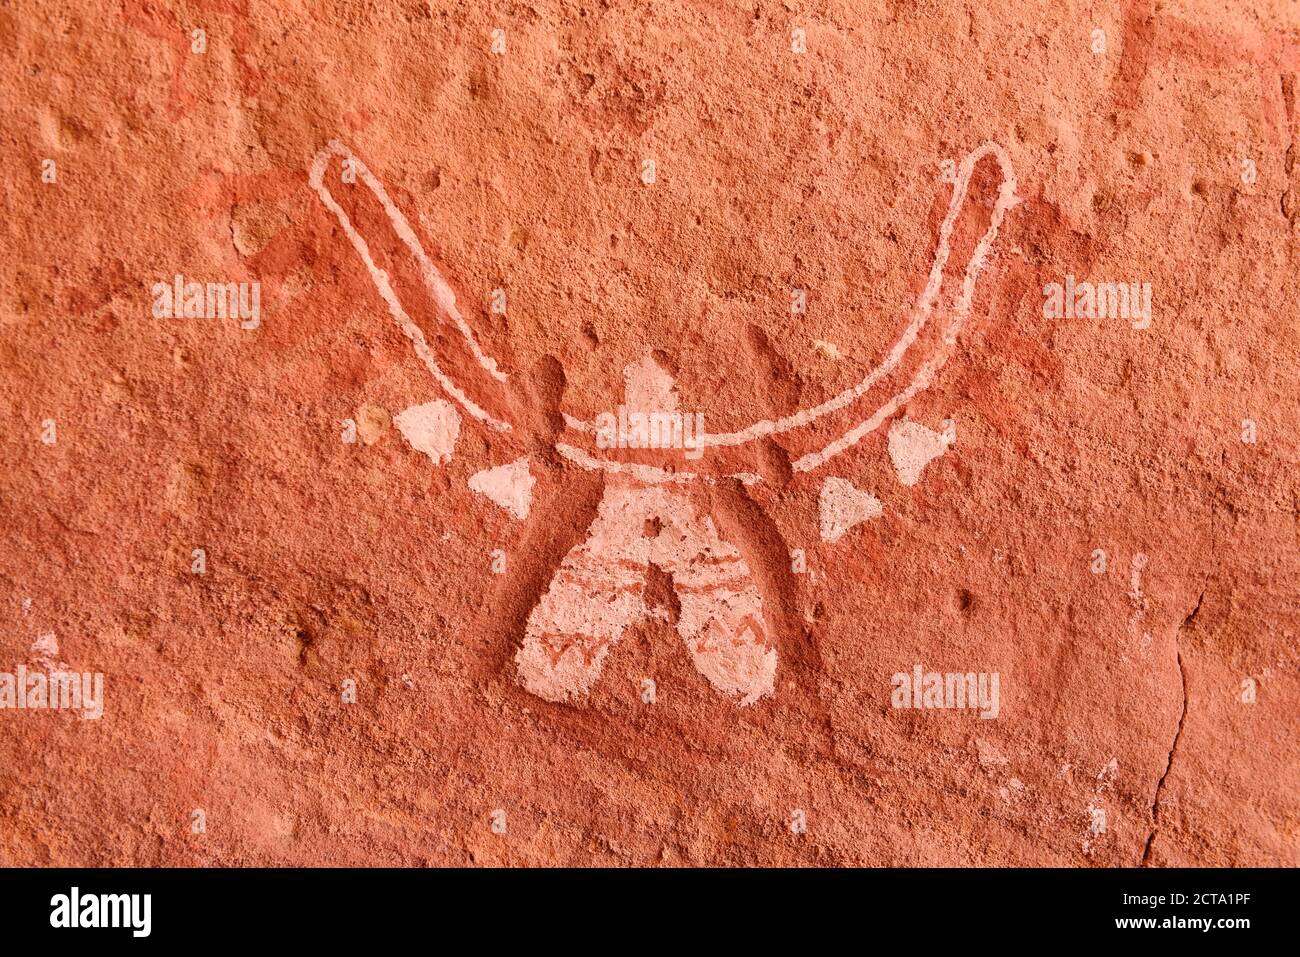 Afrique du Nord, Sahara, Algérie, Parc national de Tassili n'Ajjer, Tadrar, art rupestre néolithique, peinture rock d'une créature semblable à l'aigle Banque D'Images